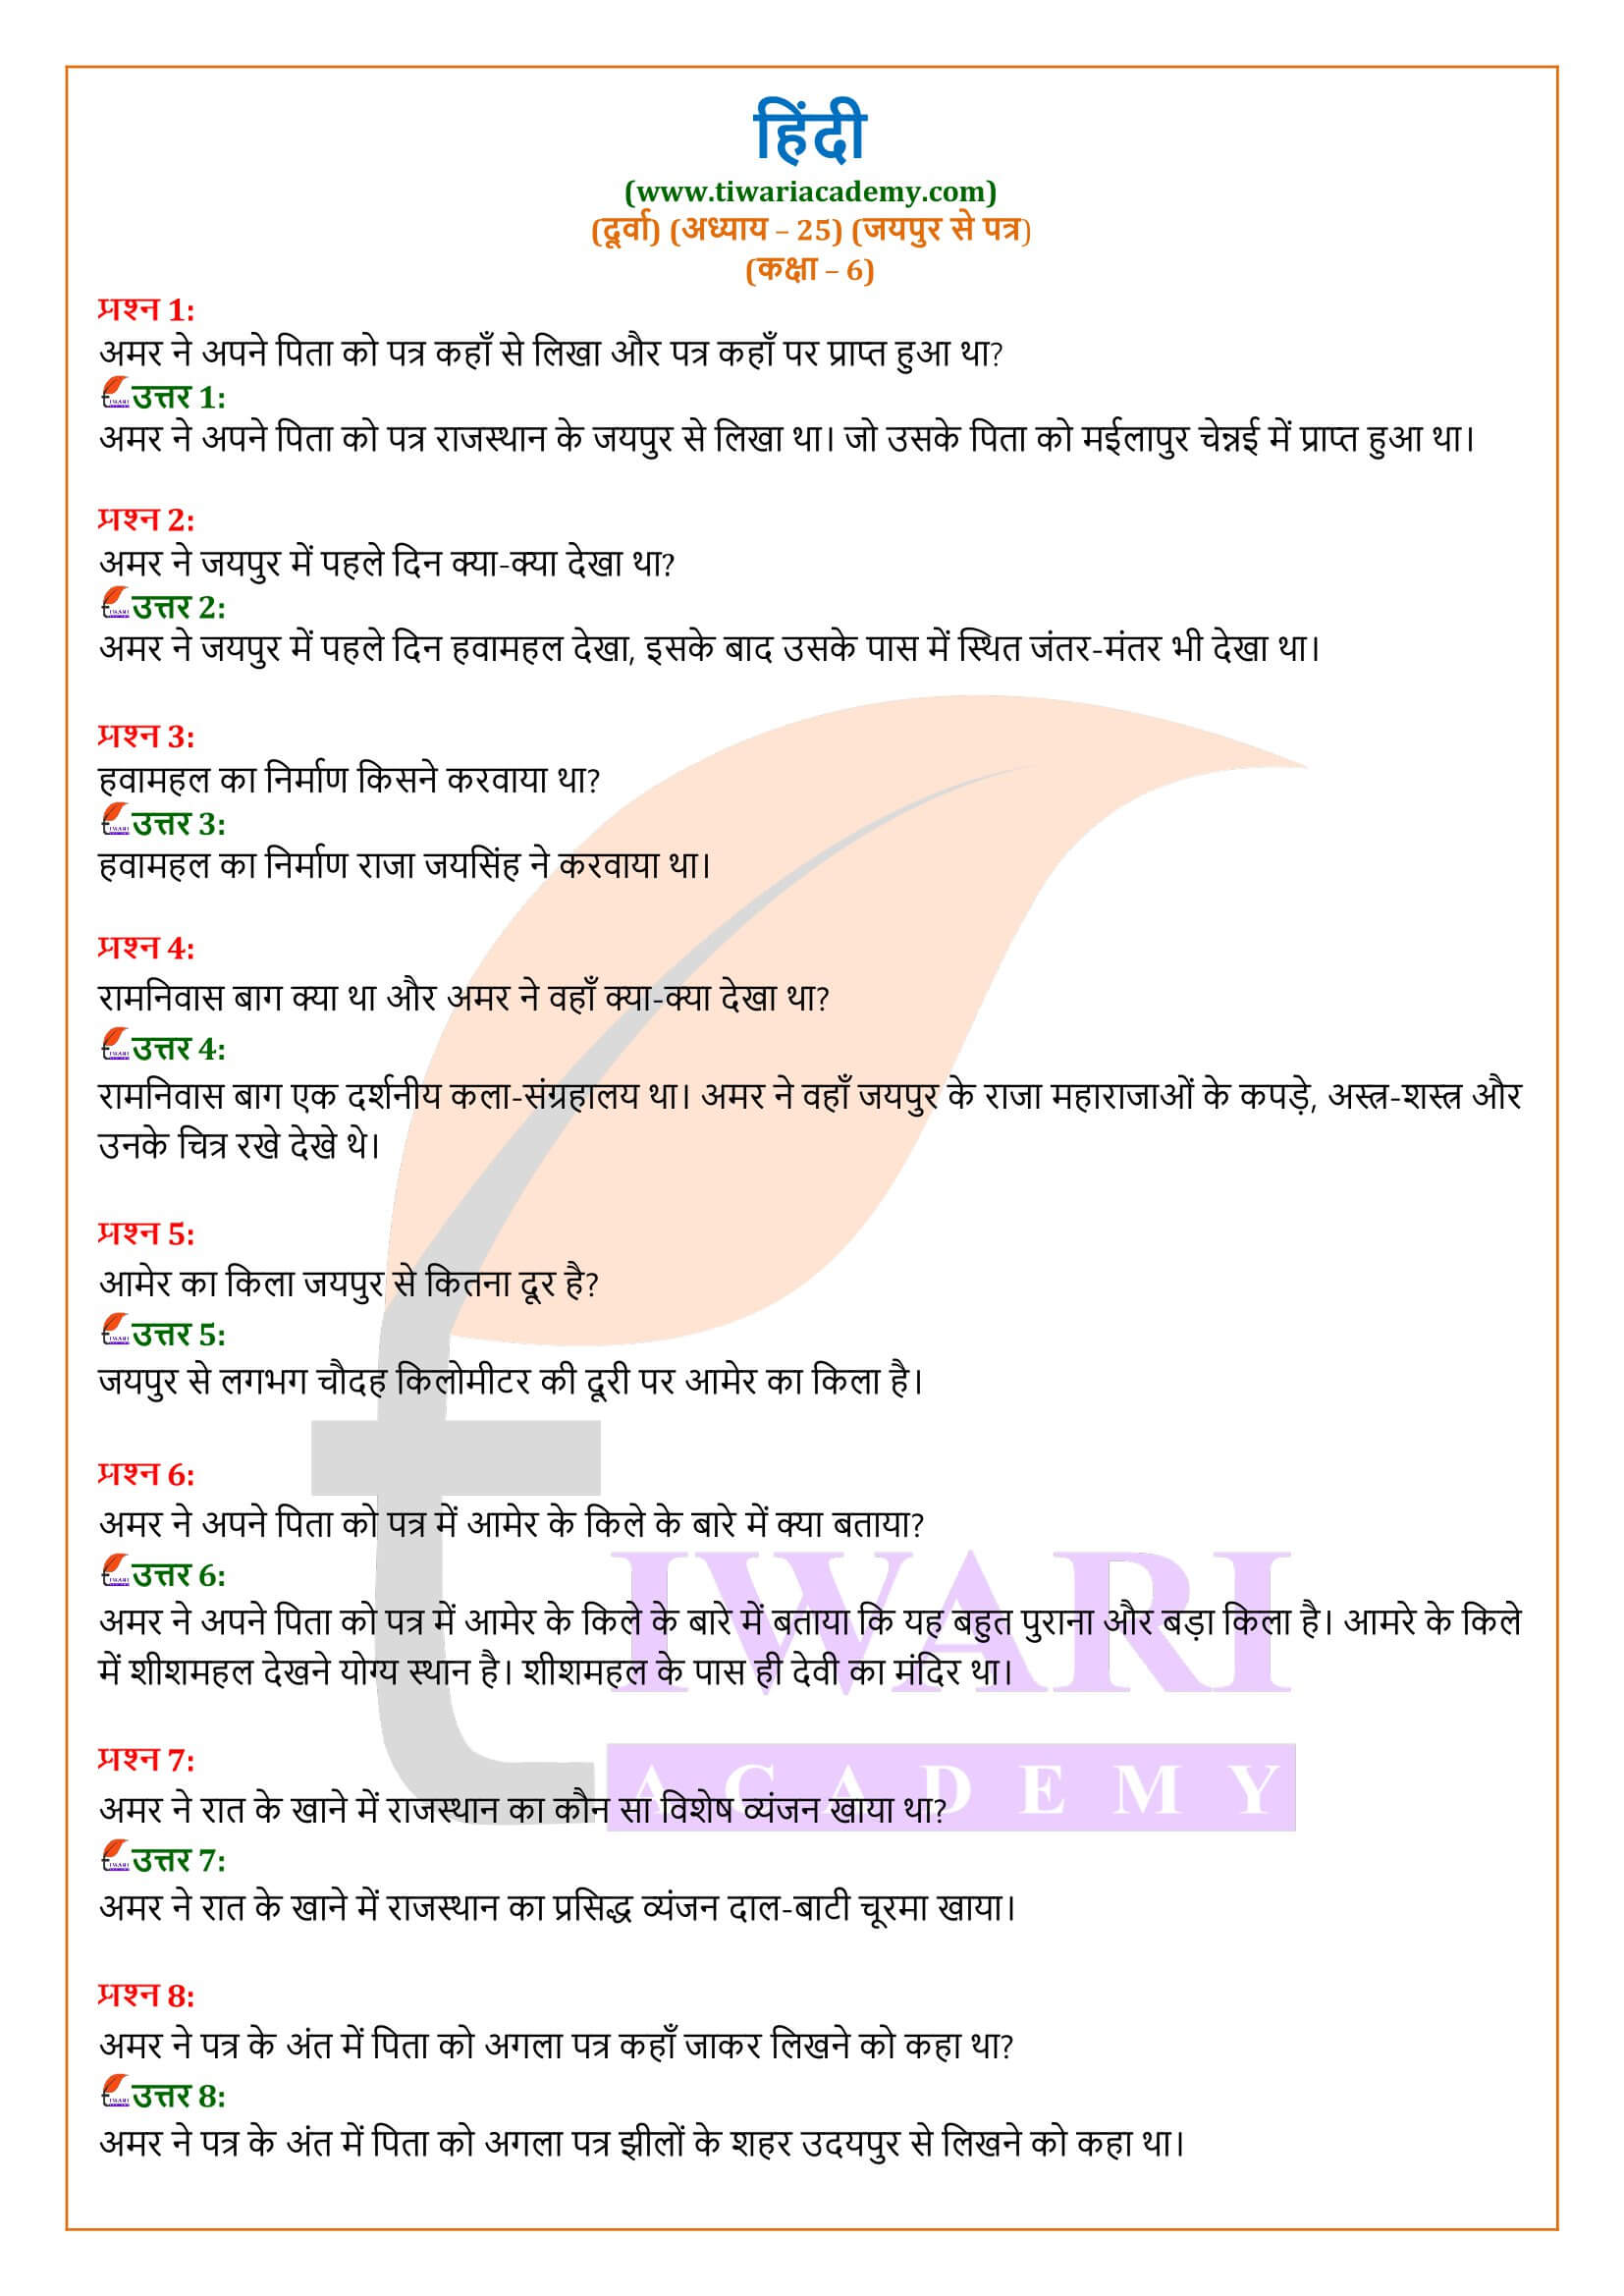 कक्षा 6 हिंदी दूर्वा पाठ 25 जयपुर से पत्र